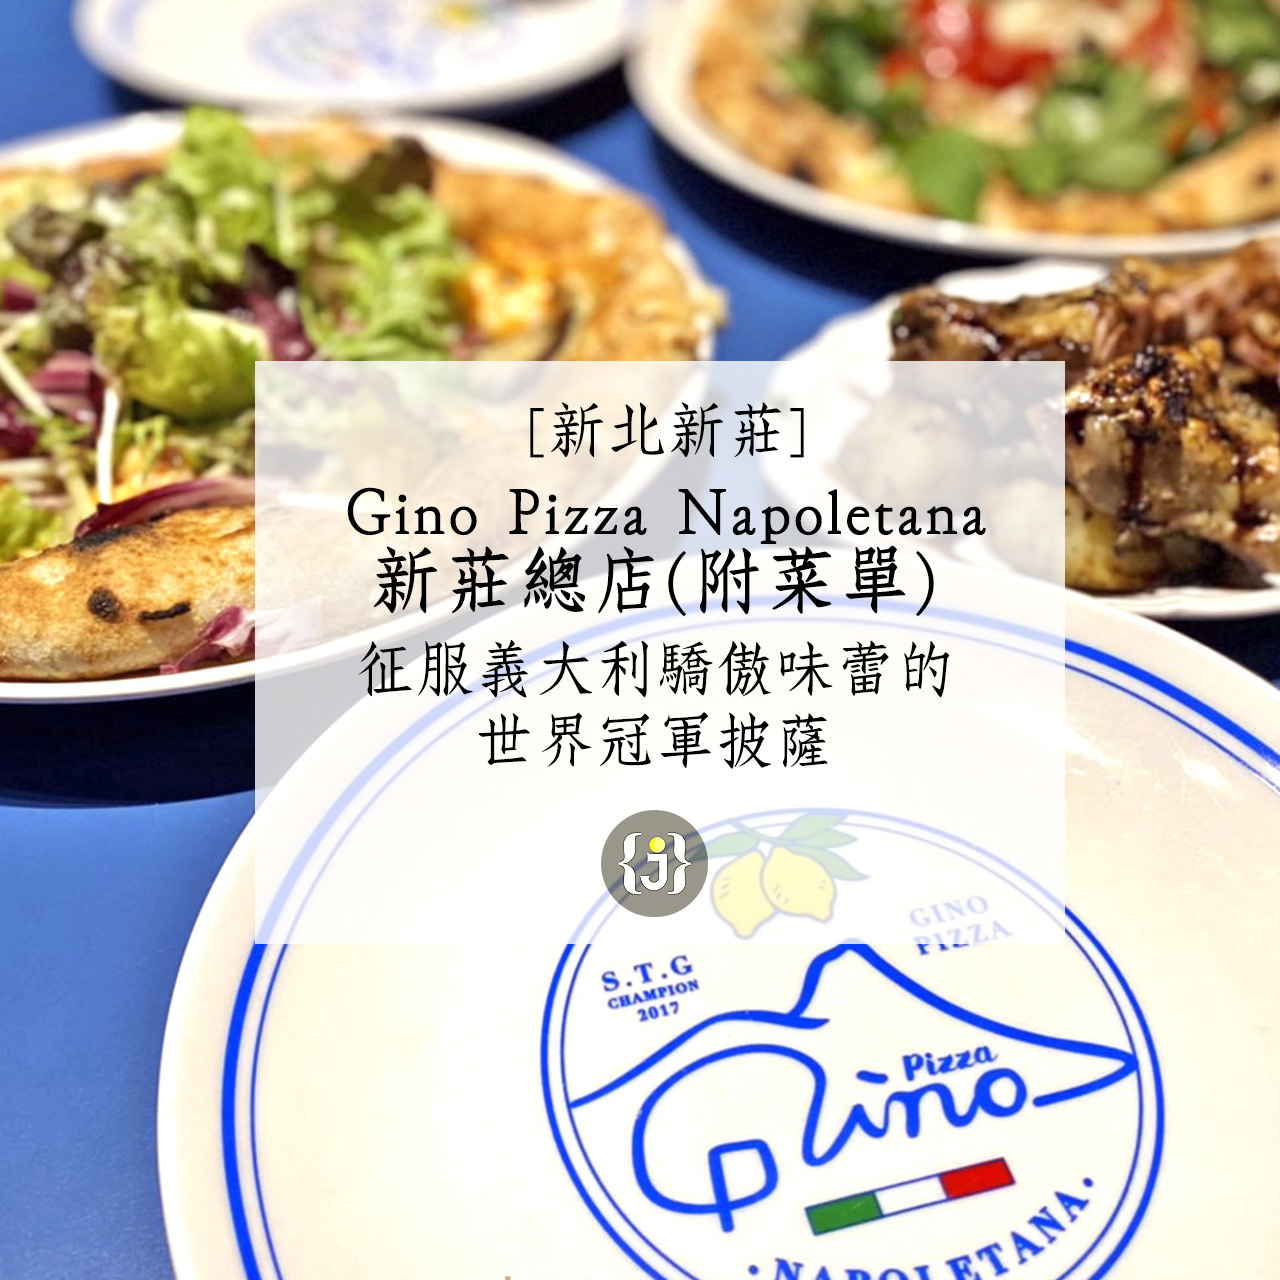 【新北新莊】Gino Pizza Napoletana新莊總店 附菜單 征服義大利驕傲味蕾的世界冠軍披薩